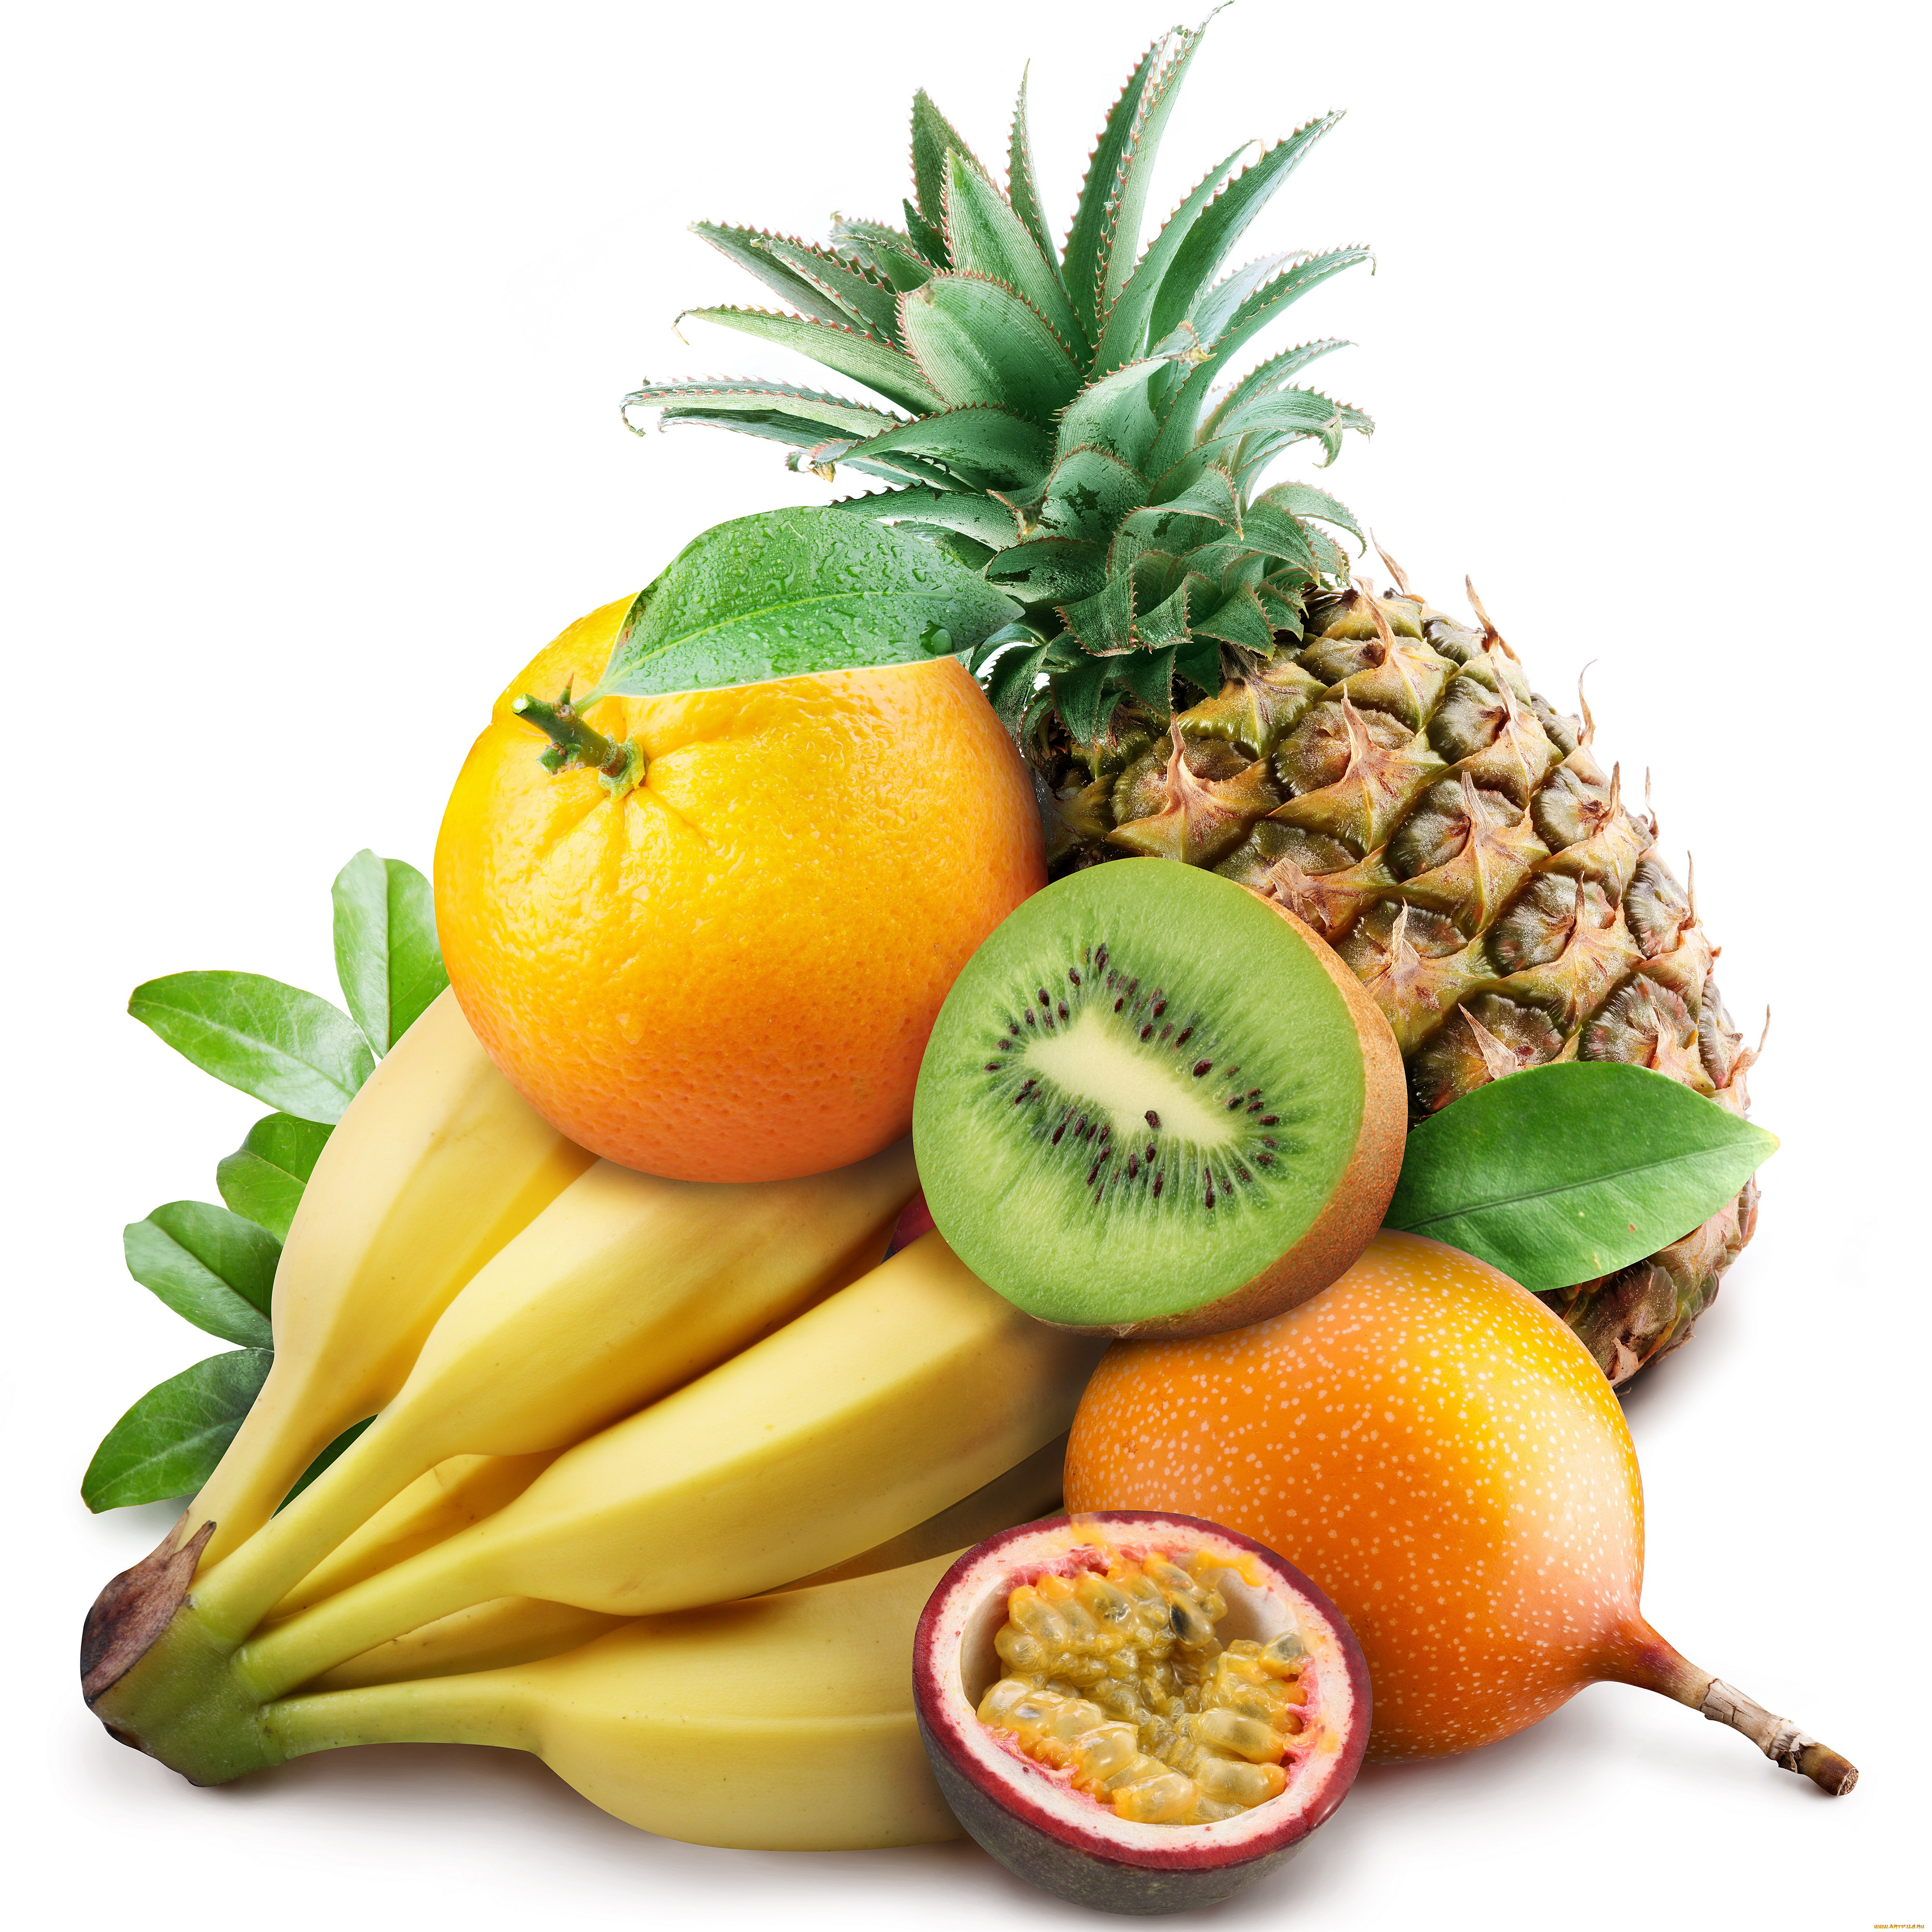 еда, фрукты, ягоды, витамины